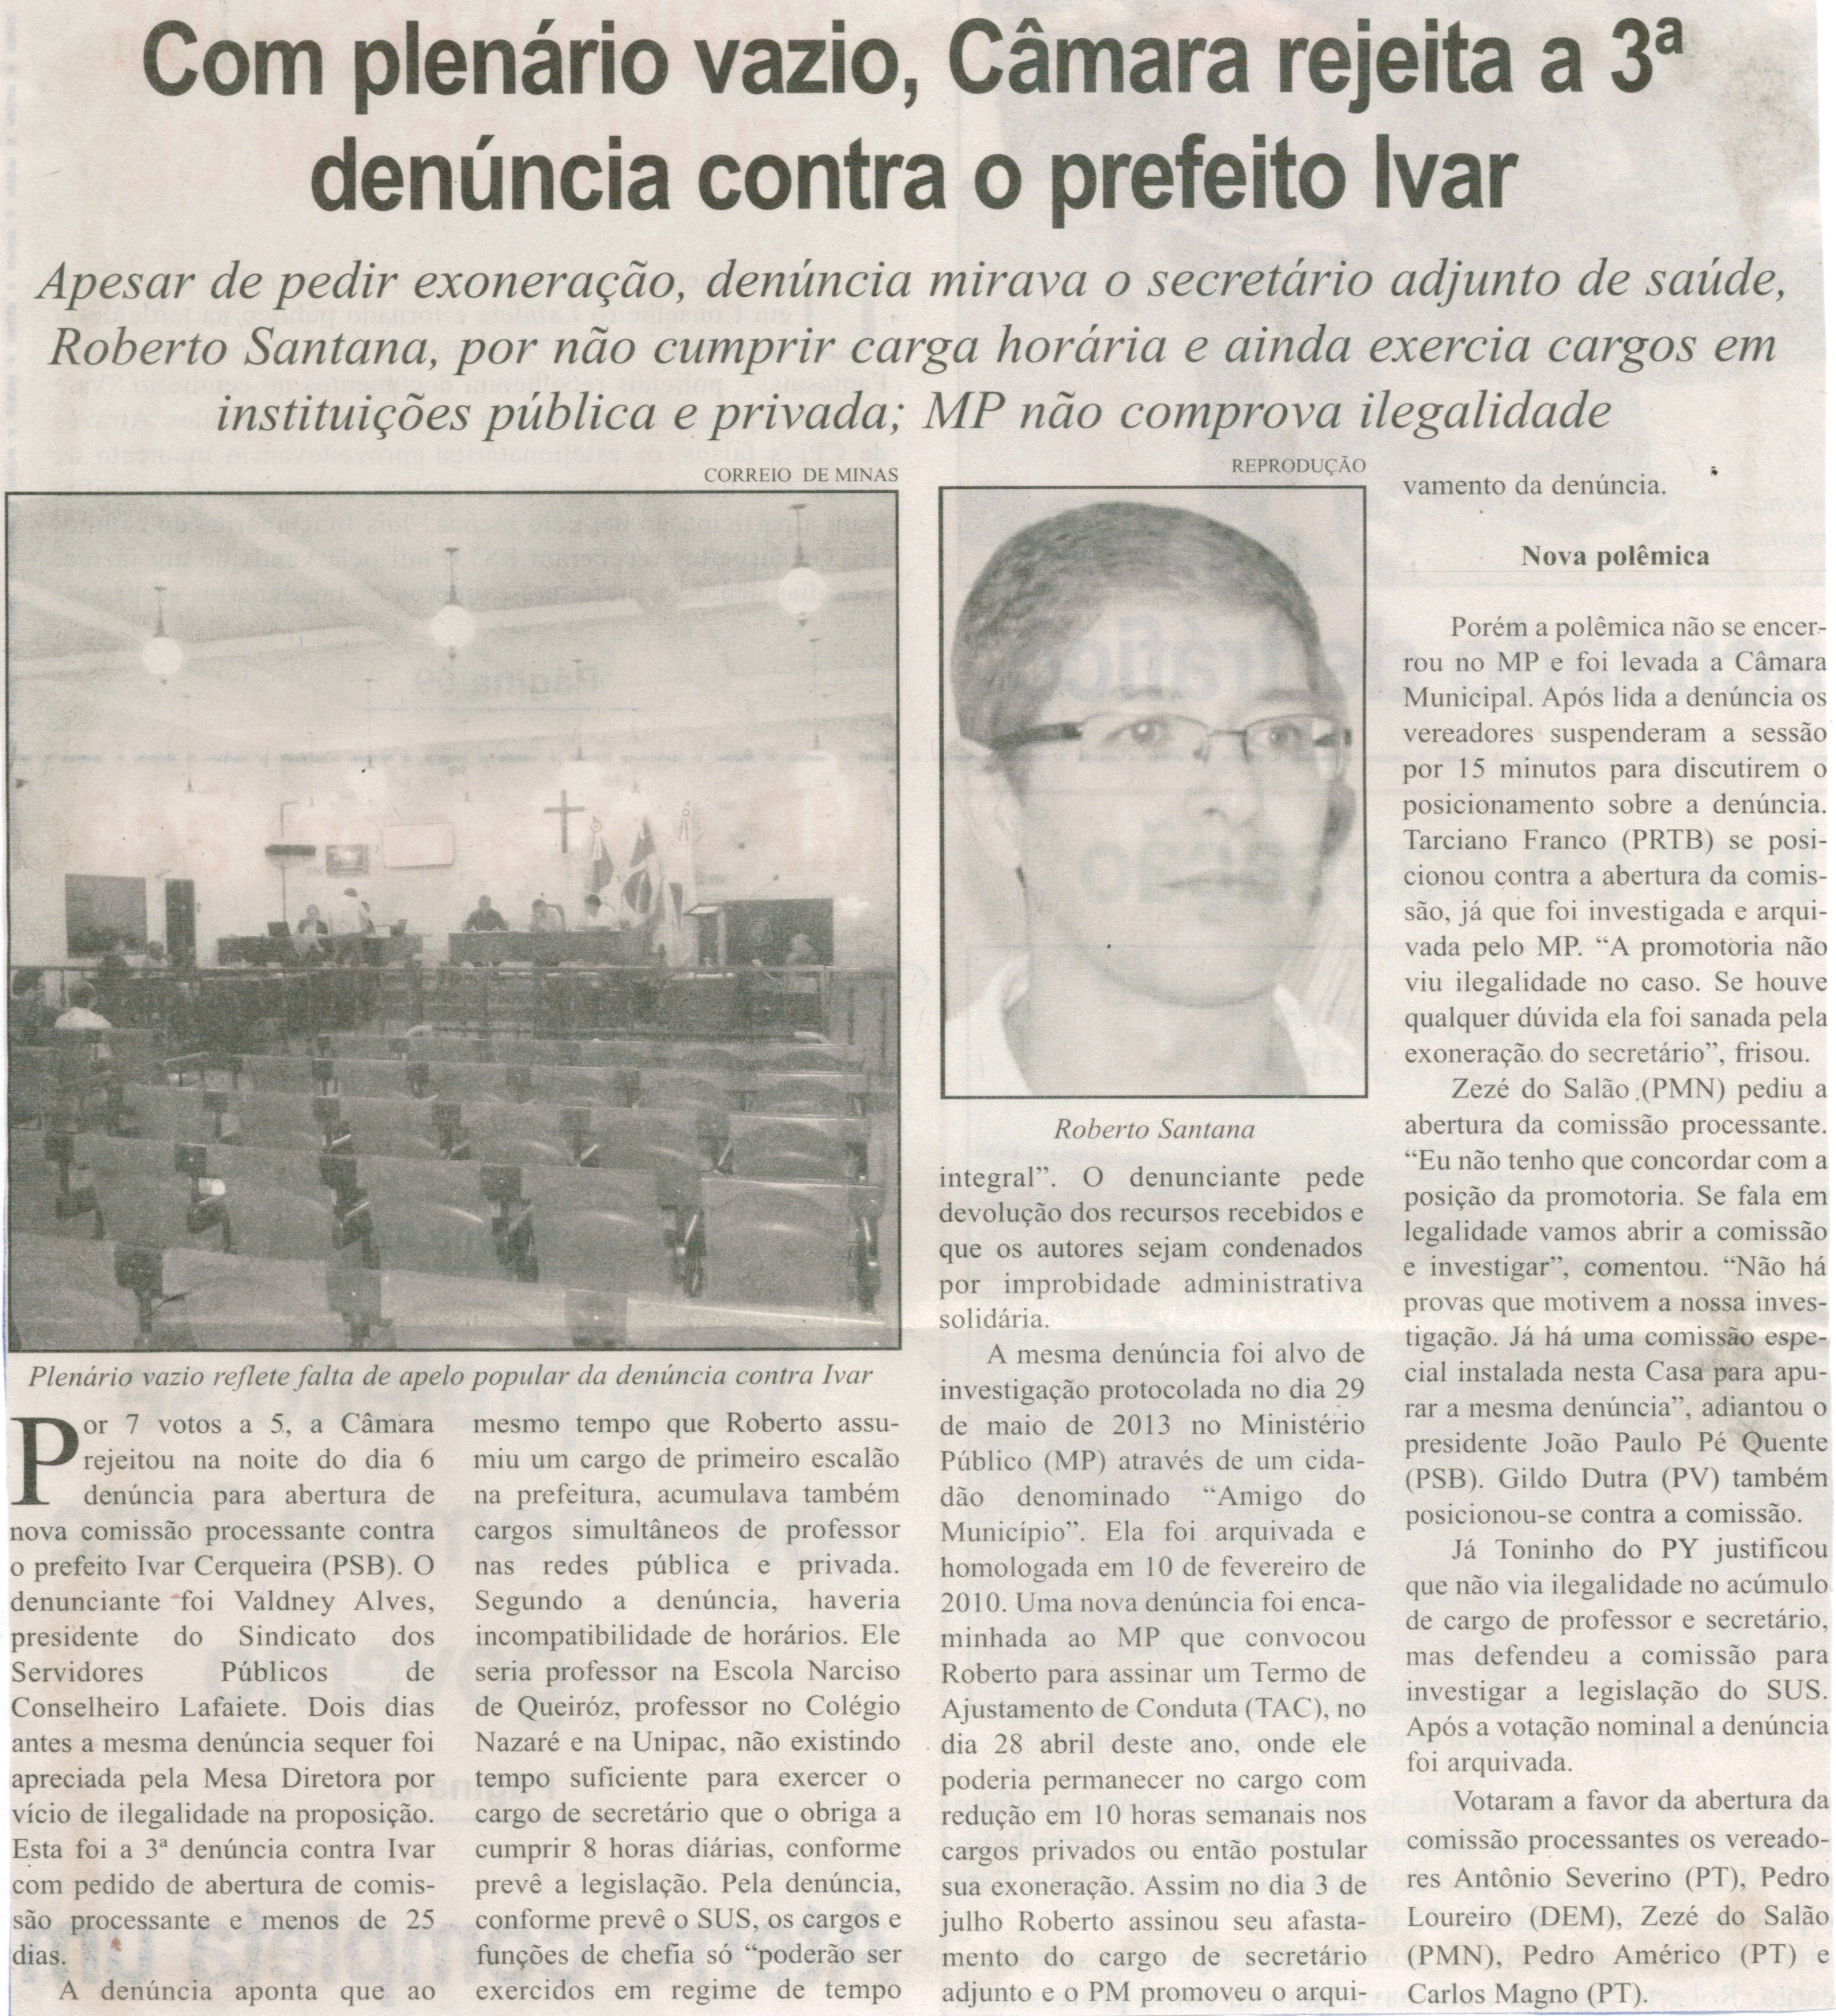 Com plenário vazio, Câmara rejeita a 3° denúncia contra o prefeito Ivar. Jornal Correio de Minas, Conselheiro Lafaiete, 08 ago. 2015, p. 02.